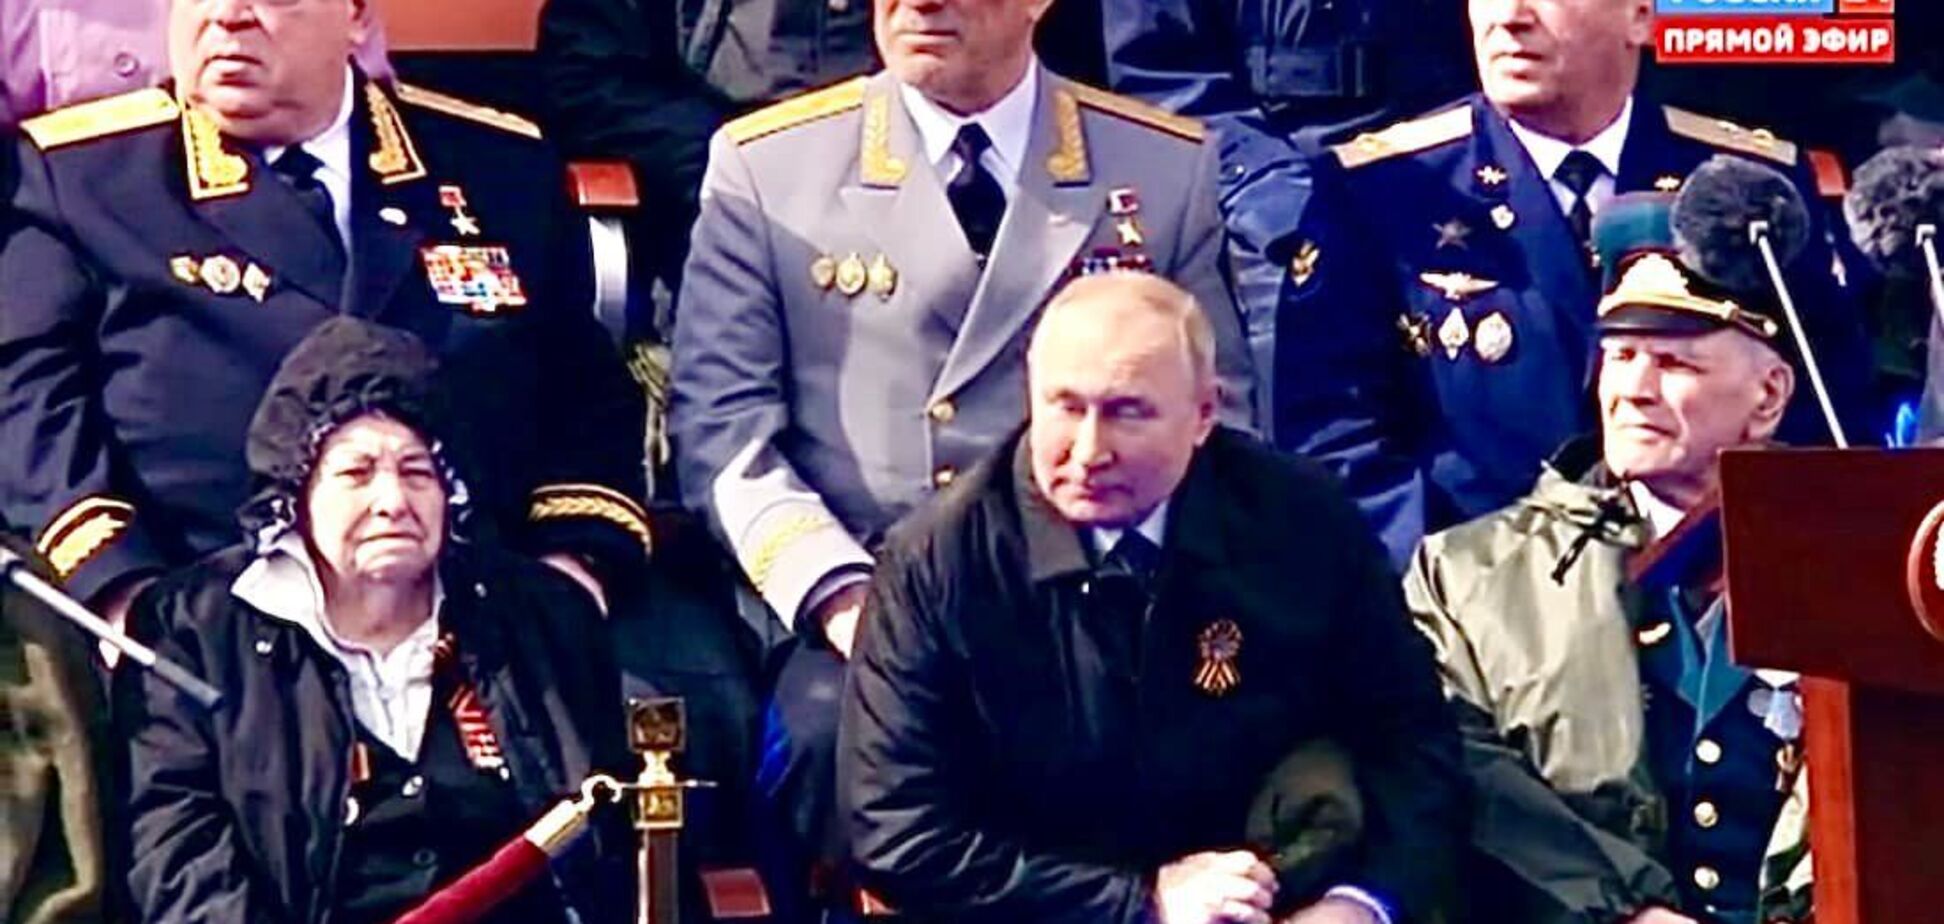 Злой, старый Путин на скамейке. Пока наслаждайся, в аду не будет скамеек